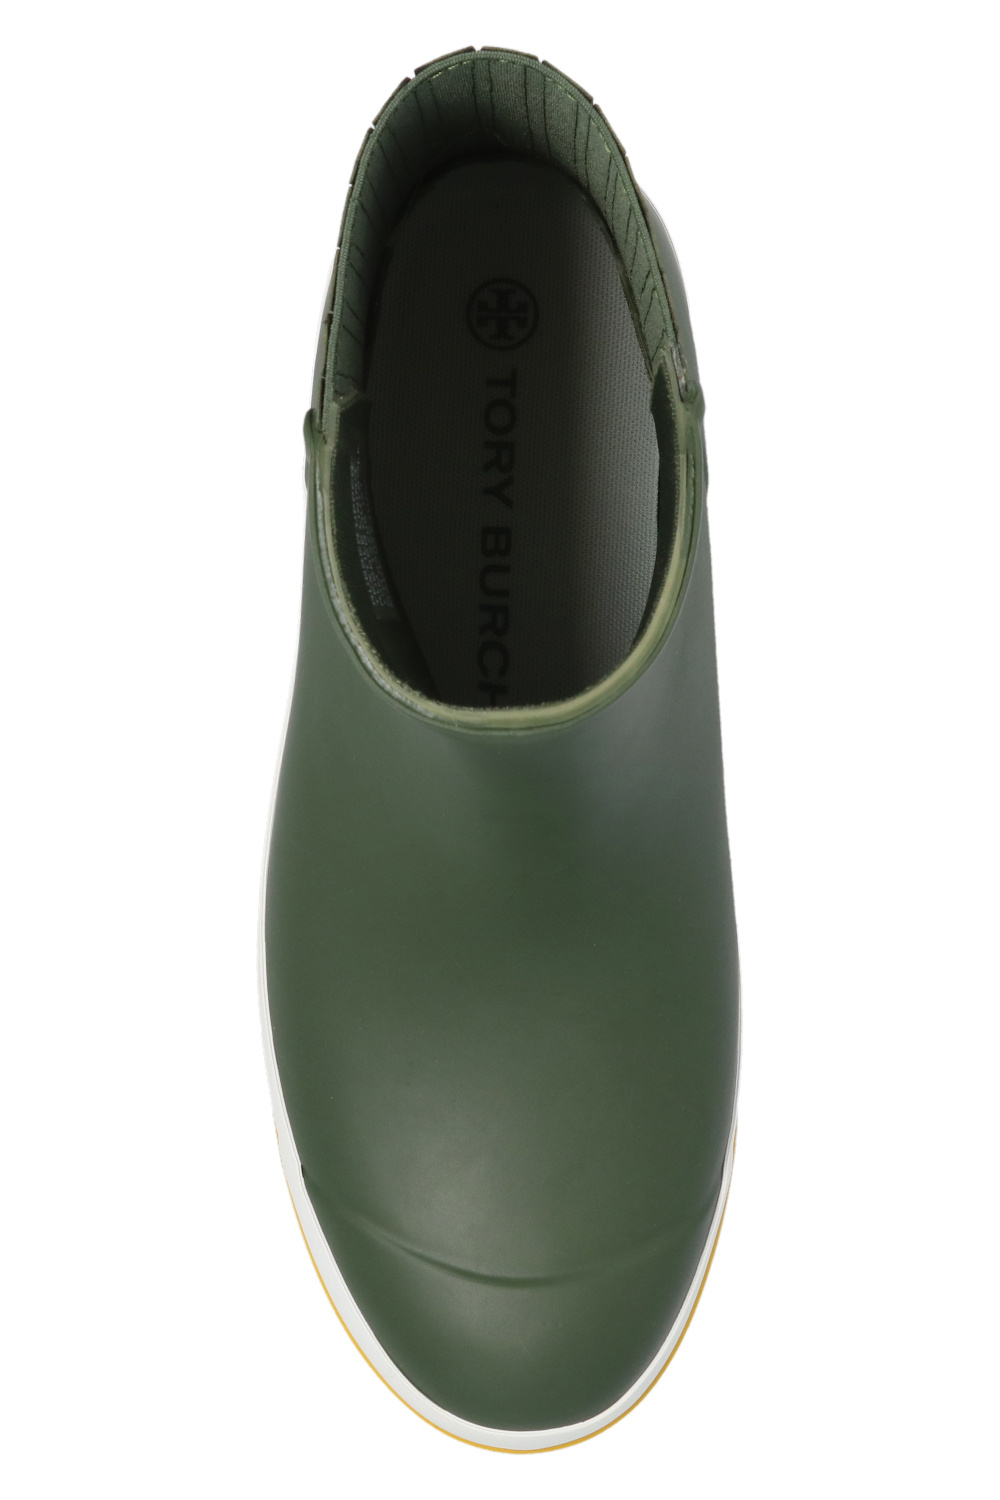 Tory Burch Rain boots with logo | Women's Shoes | Vitkac